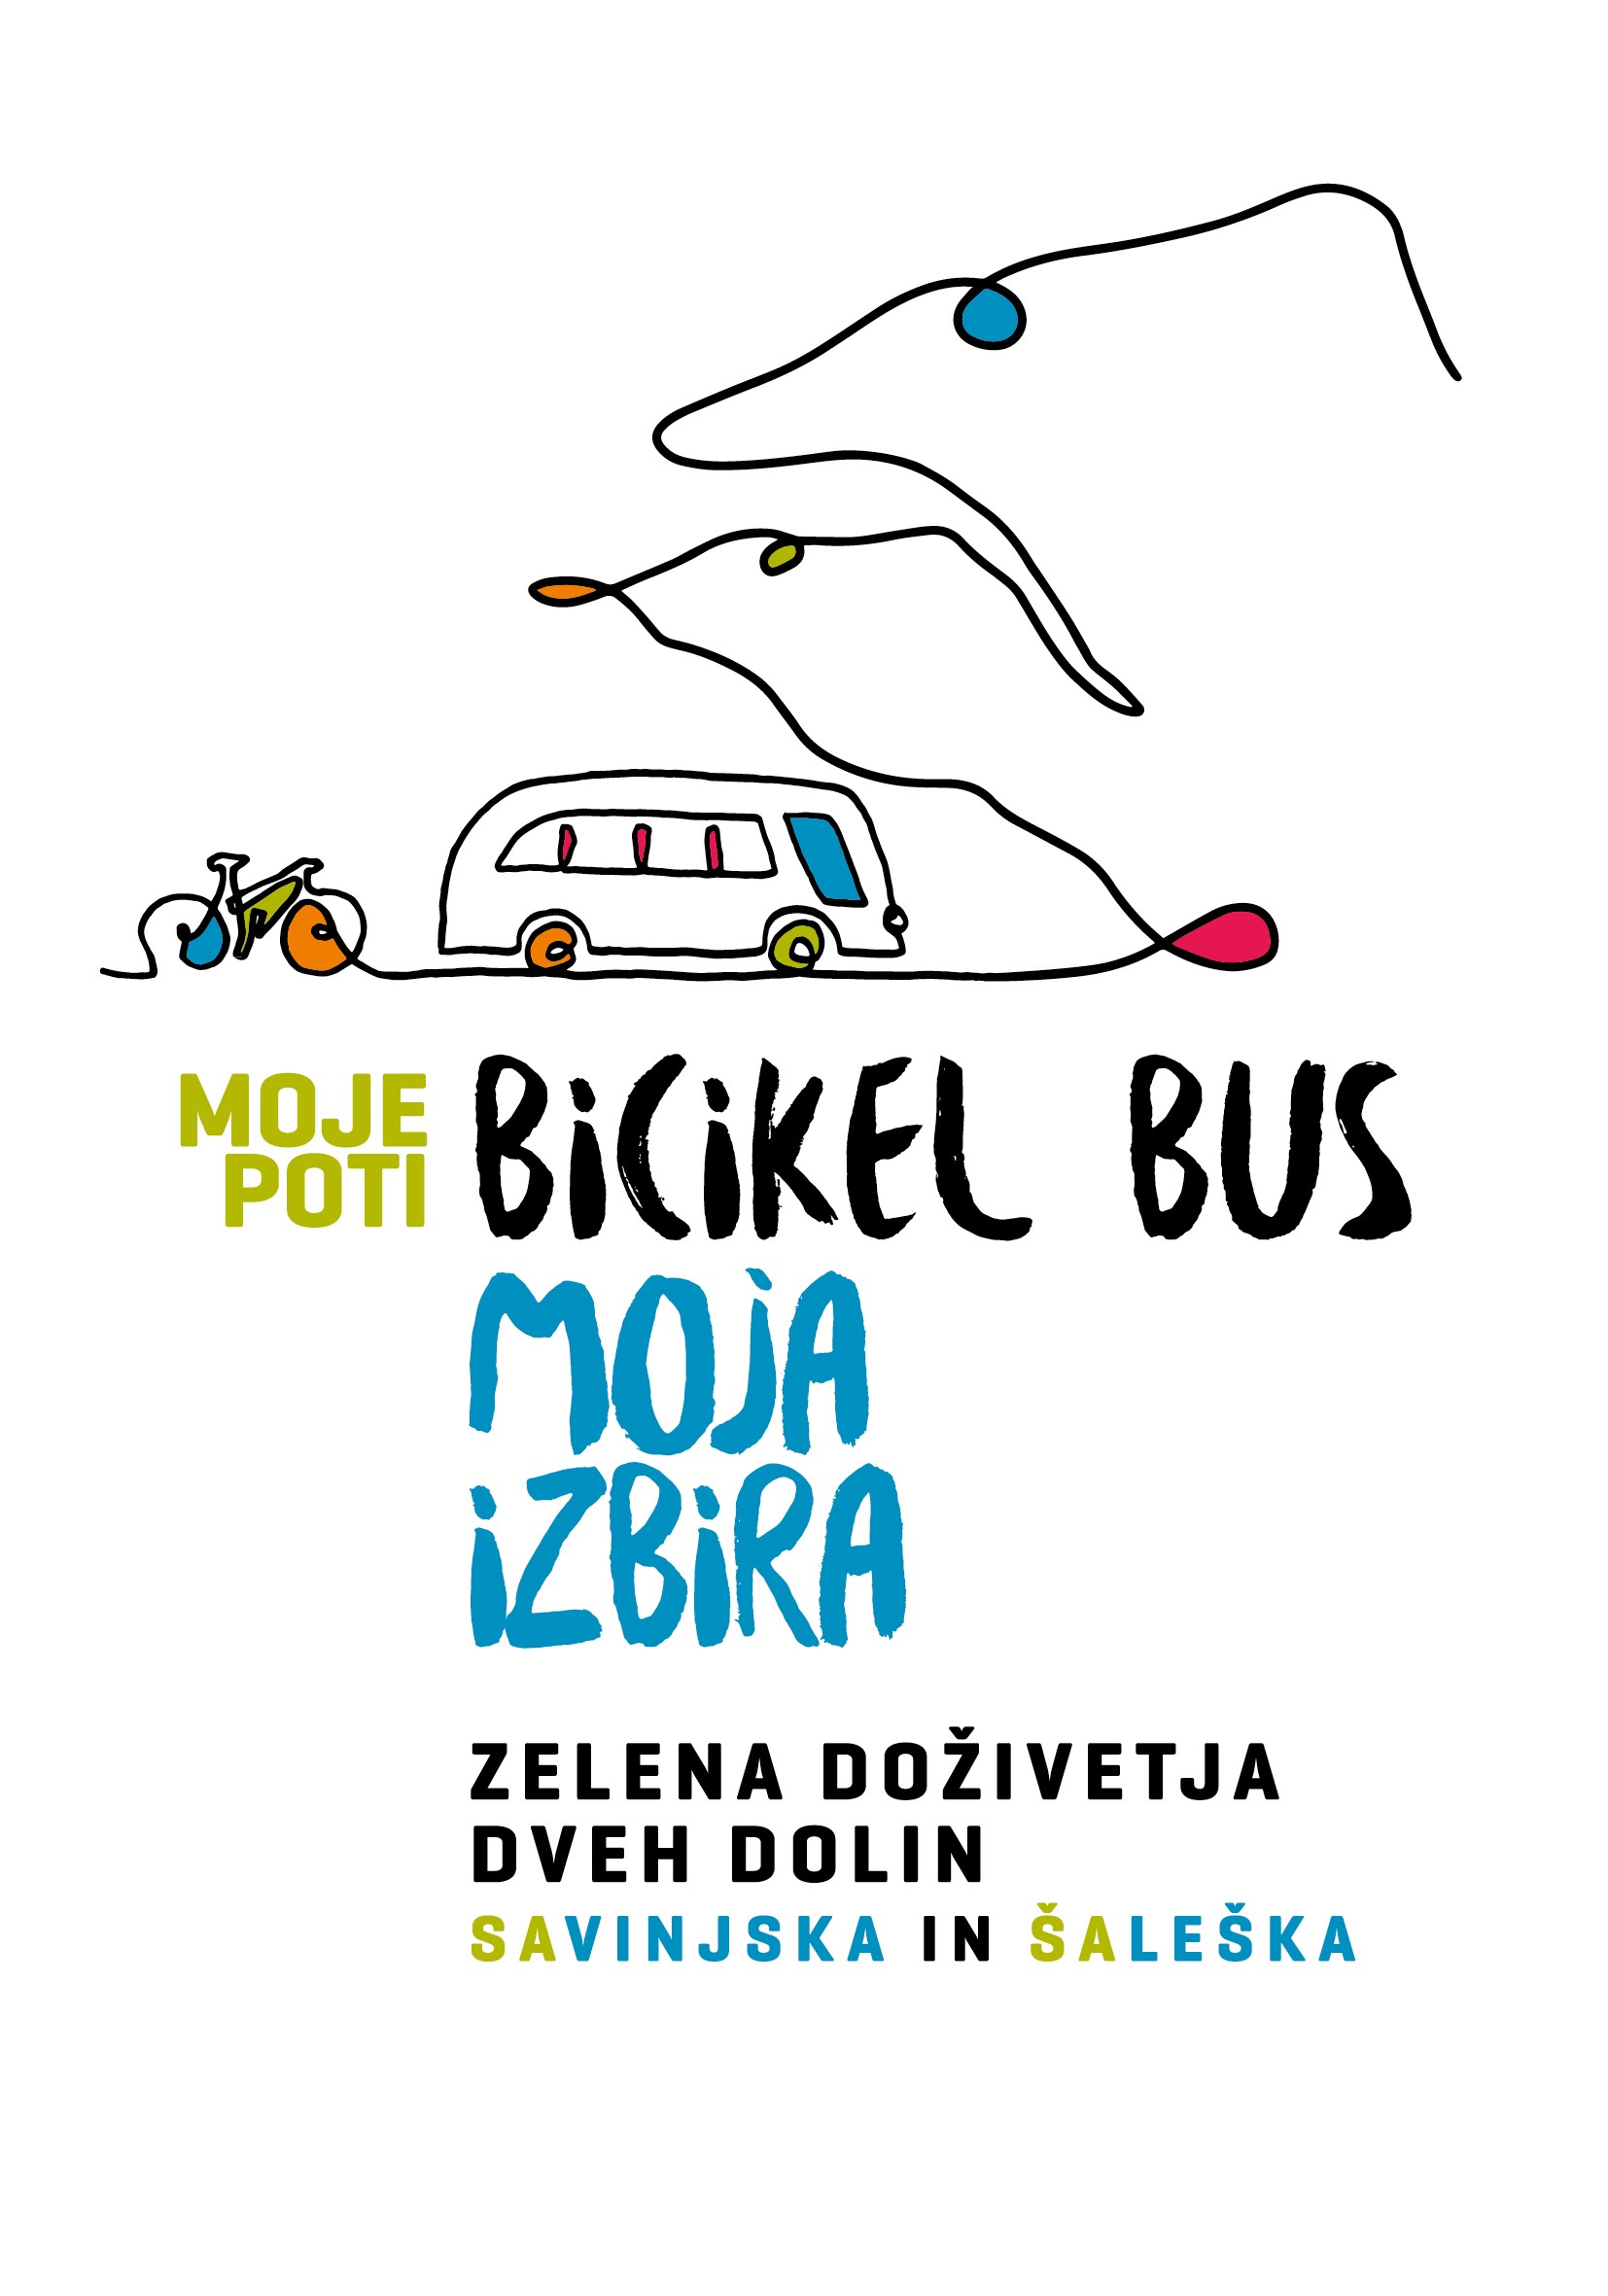 Bicikel bus